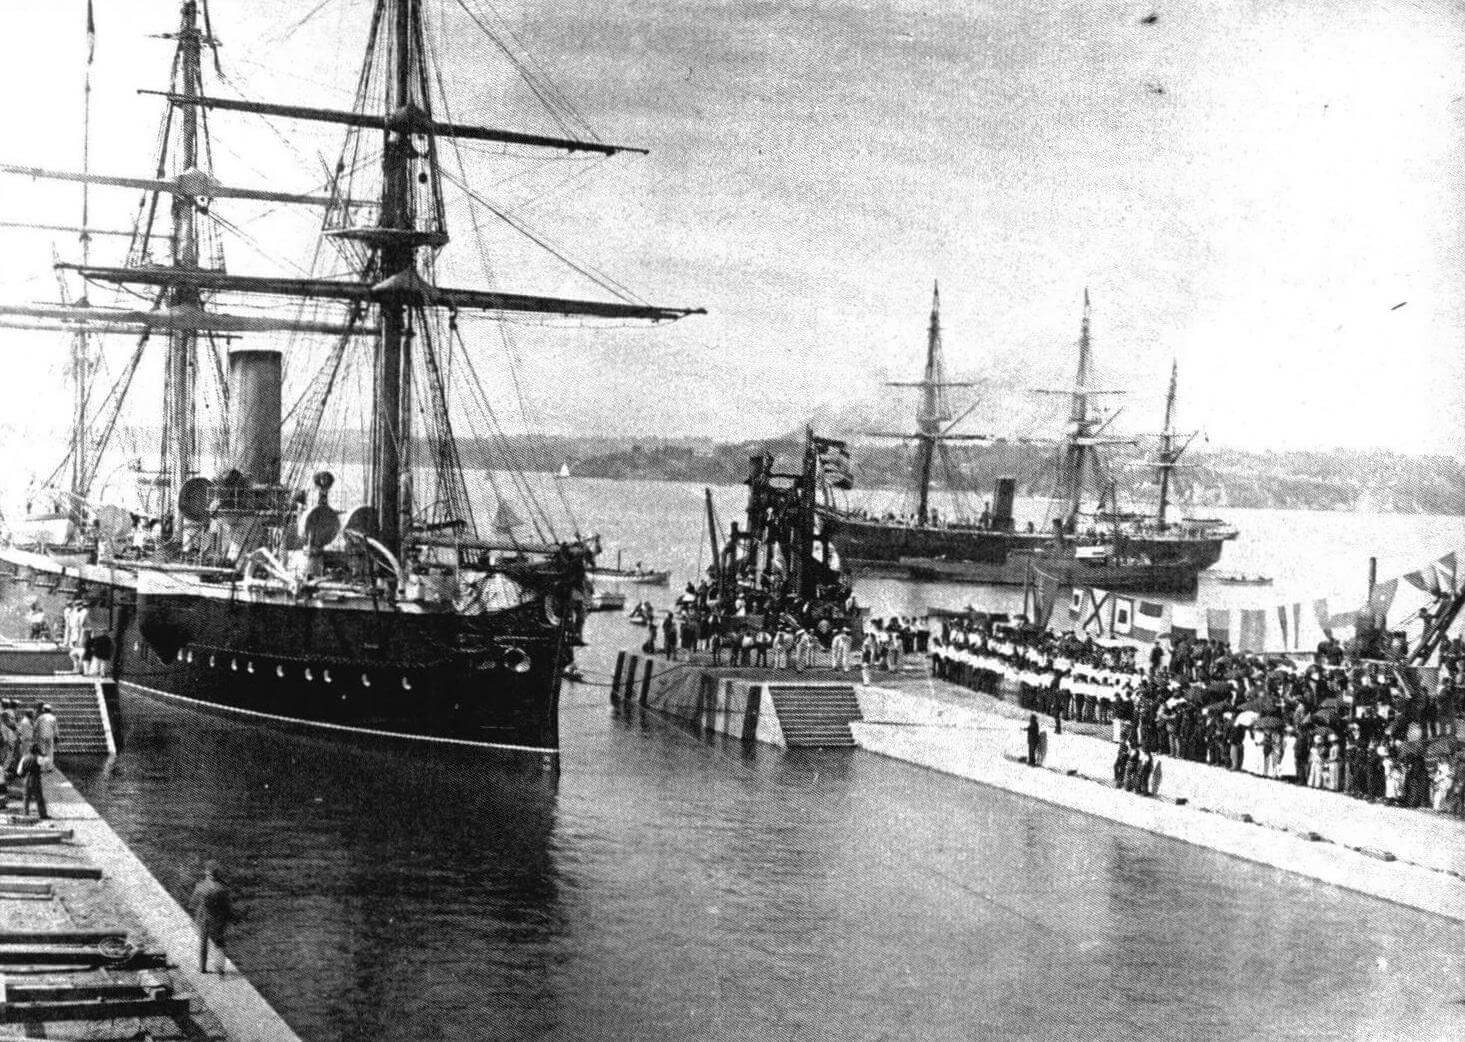 «Каллиопа» входит в док Каллиопа в Окленде (Новая Зеландия) 16 февраля 1888 года. Хорошо видно, что бушприт корабля убран для уменьшения его максимальной длины